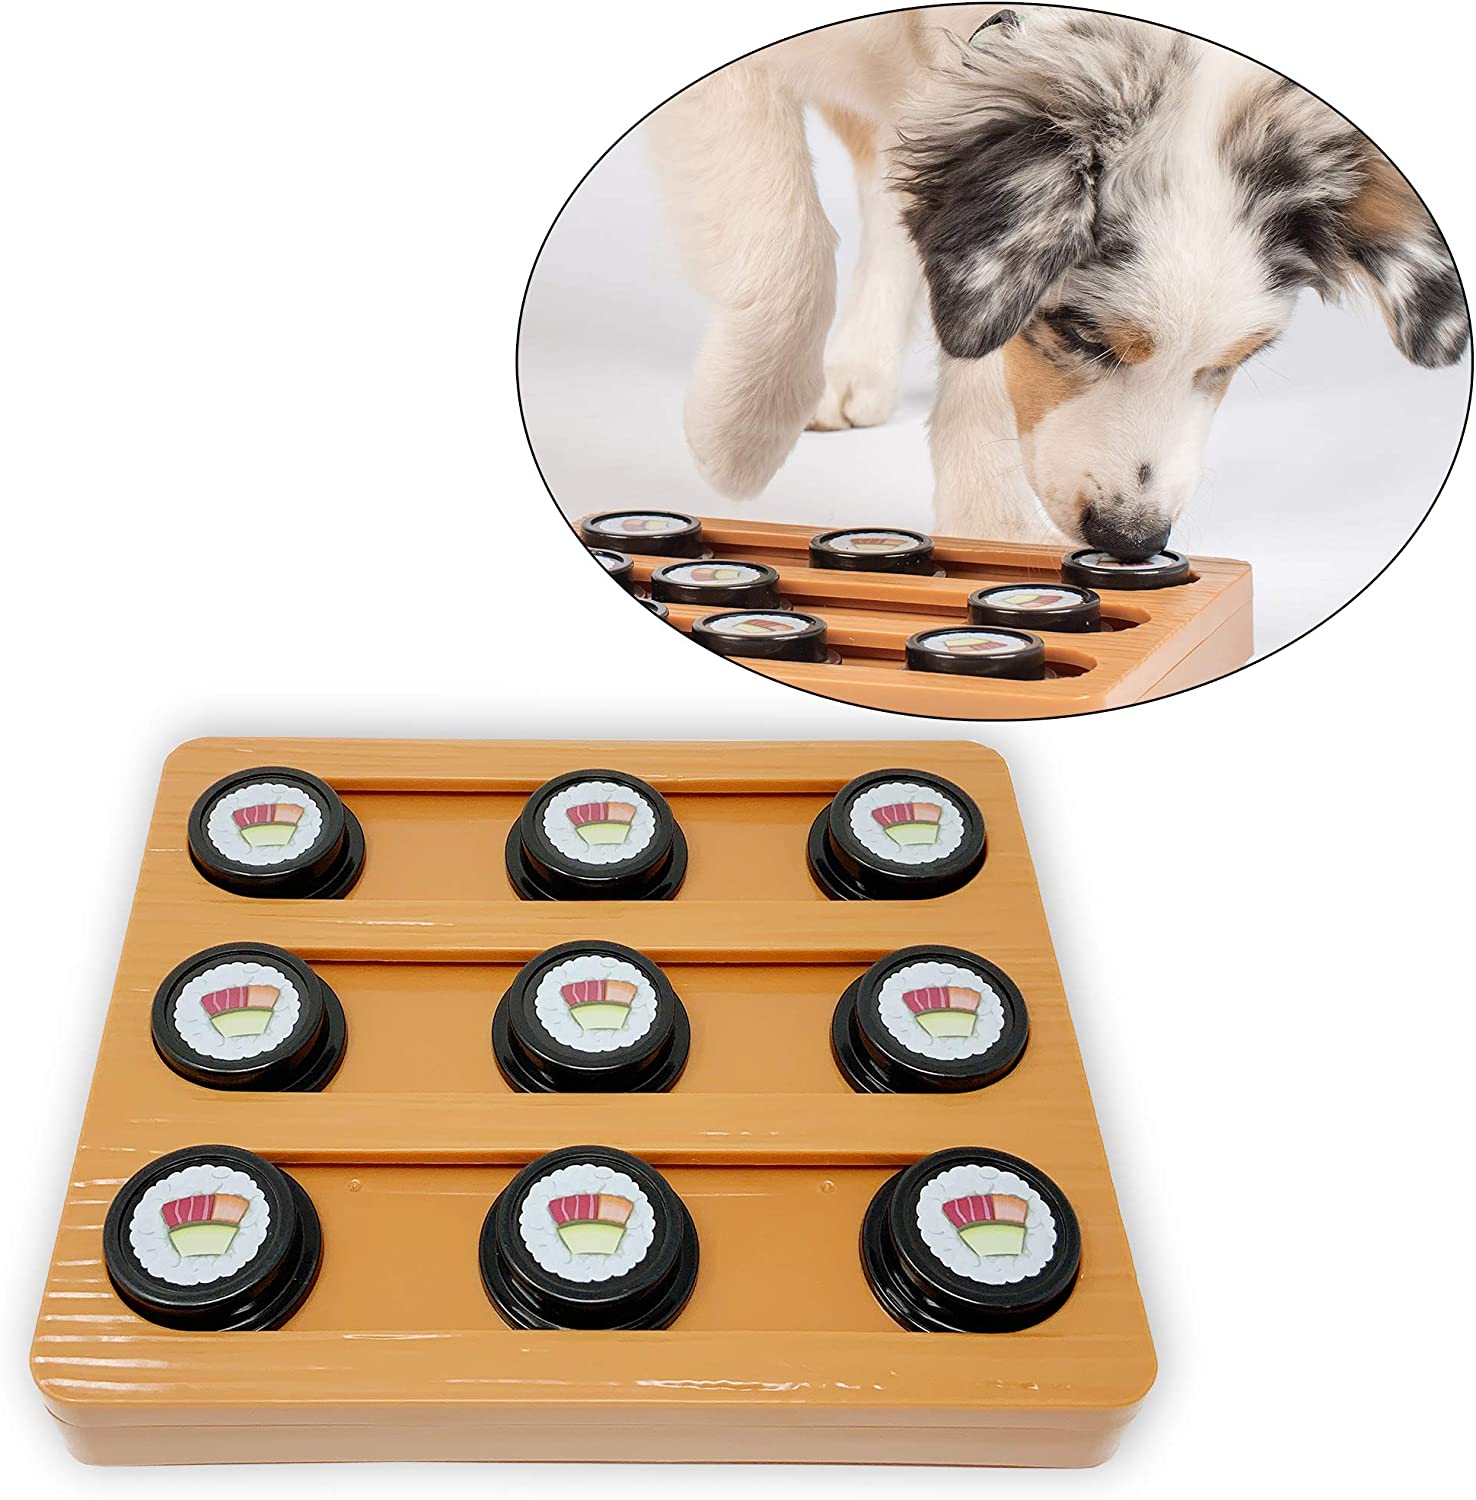 7. Onze Huisdieren Sushi Interactieve Puzzel Game